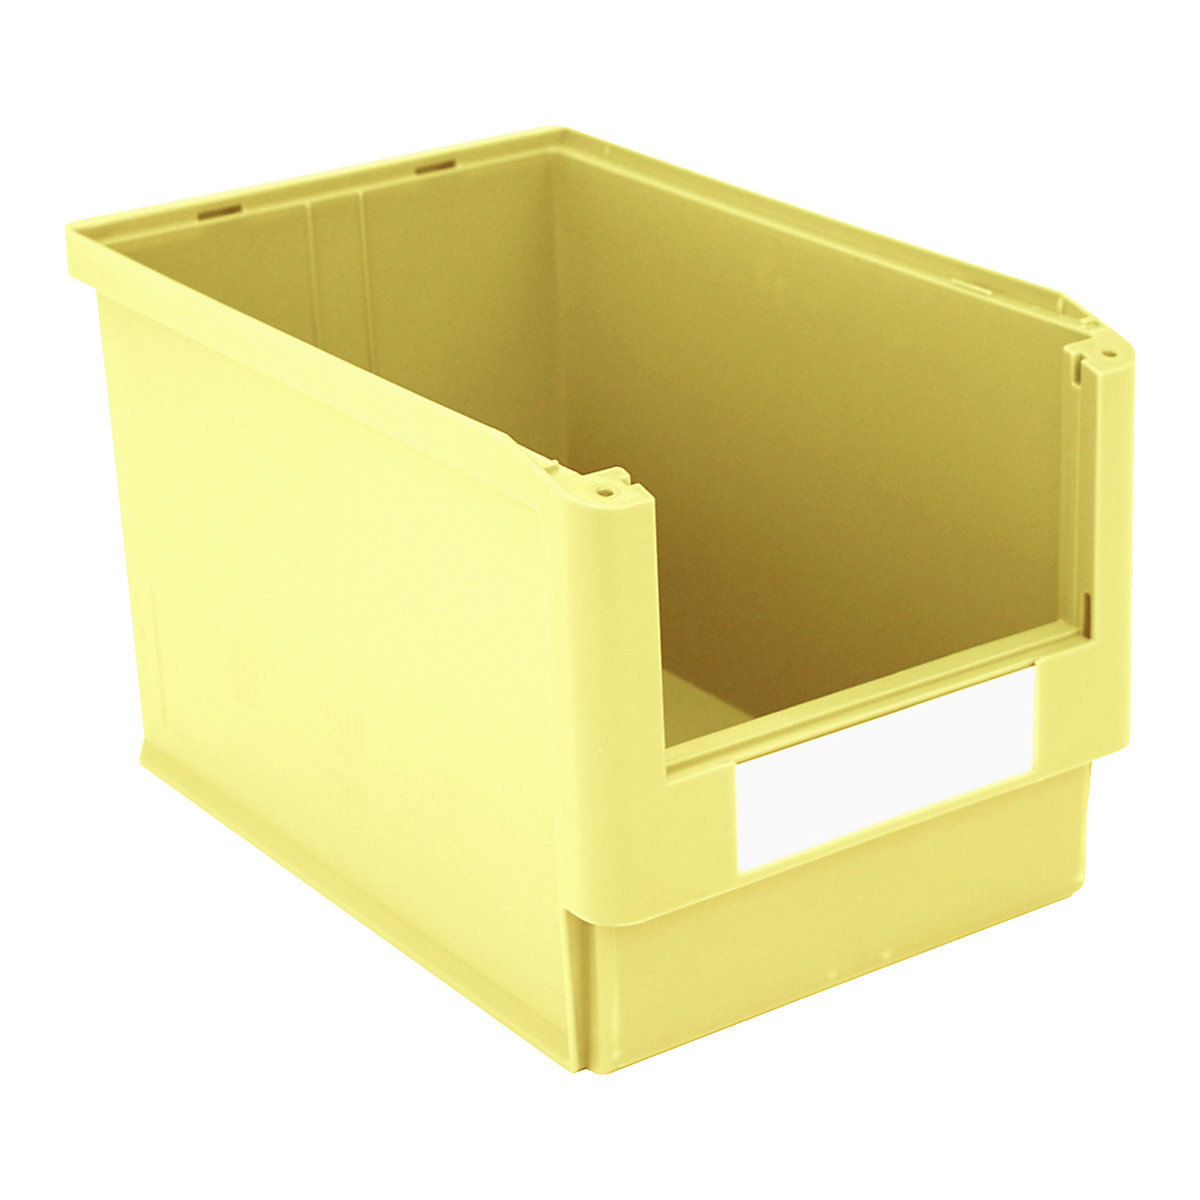 Caixa de armazenagem à vista – BITO, CxLxA 500 x 313 x 300 mm, embalagem de 4 unid., amarelo-4